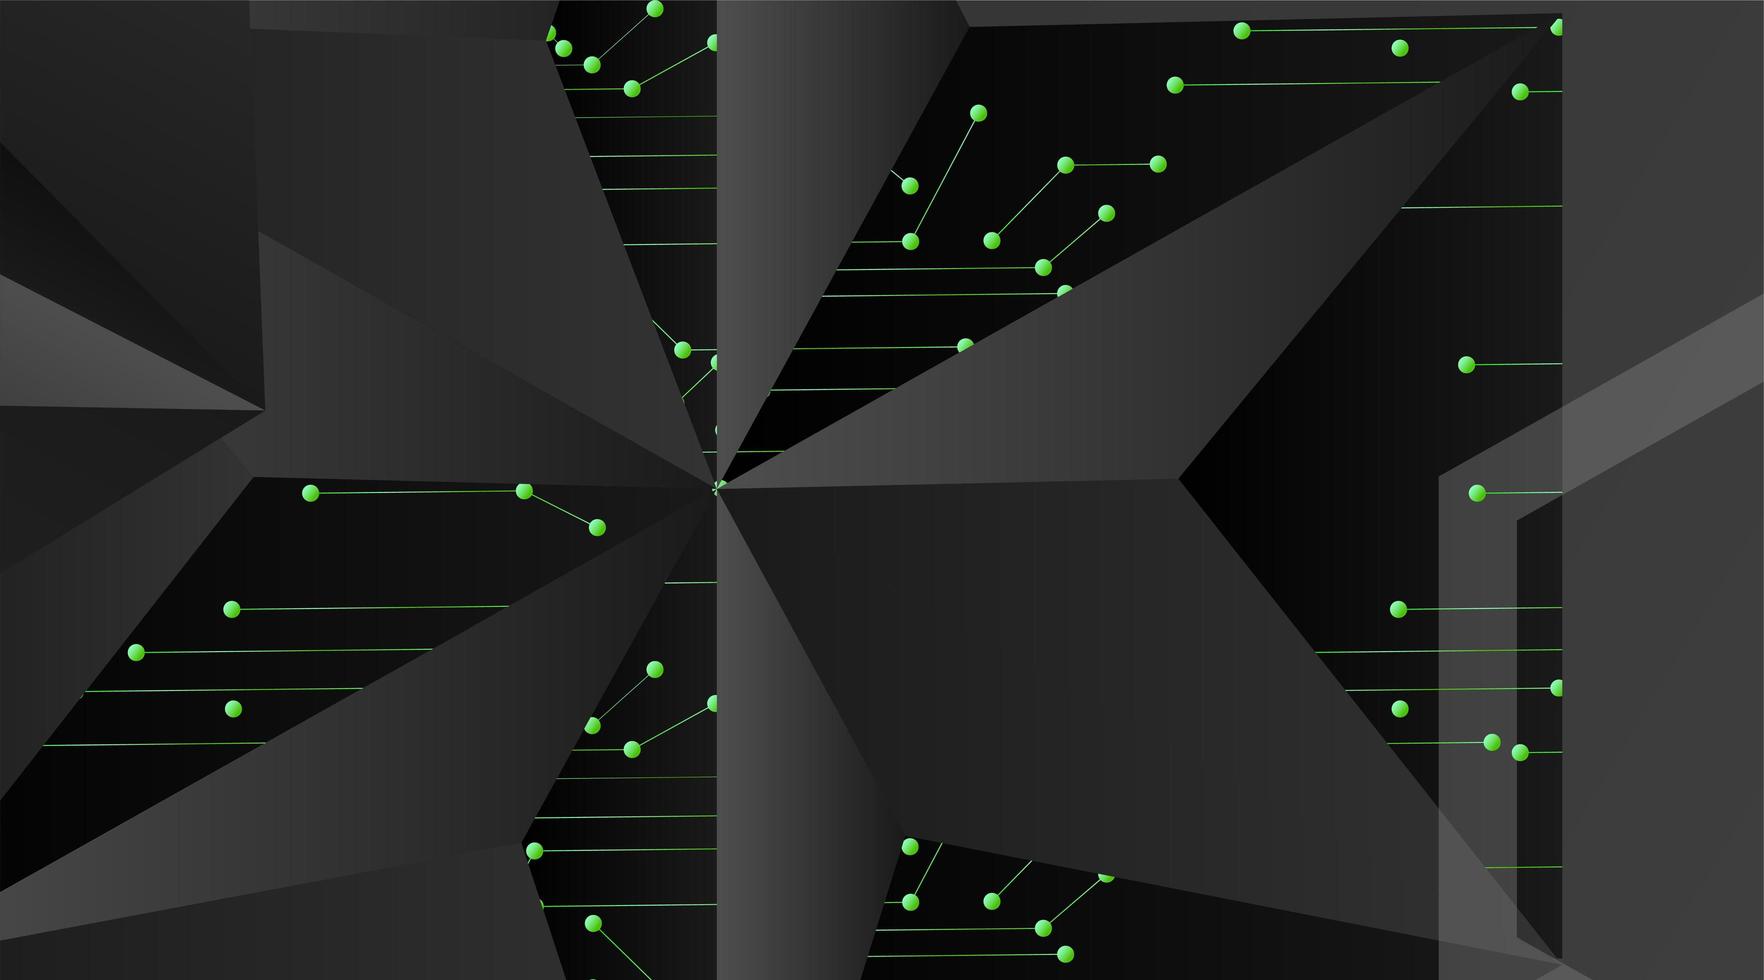 geometrischer Hintergrund des abstrakten Vektors. Polygonale Schablone des dunkelgrauen Vektors und verbundene Punkte der grünen Linie vektor